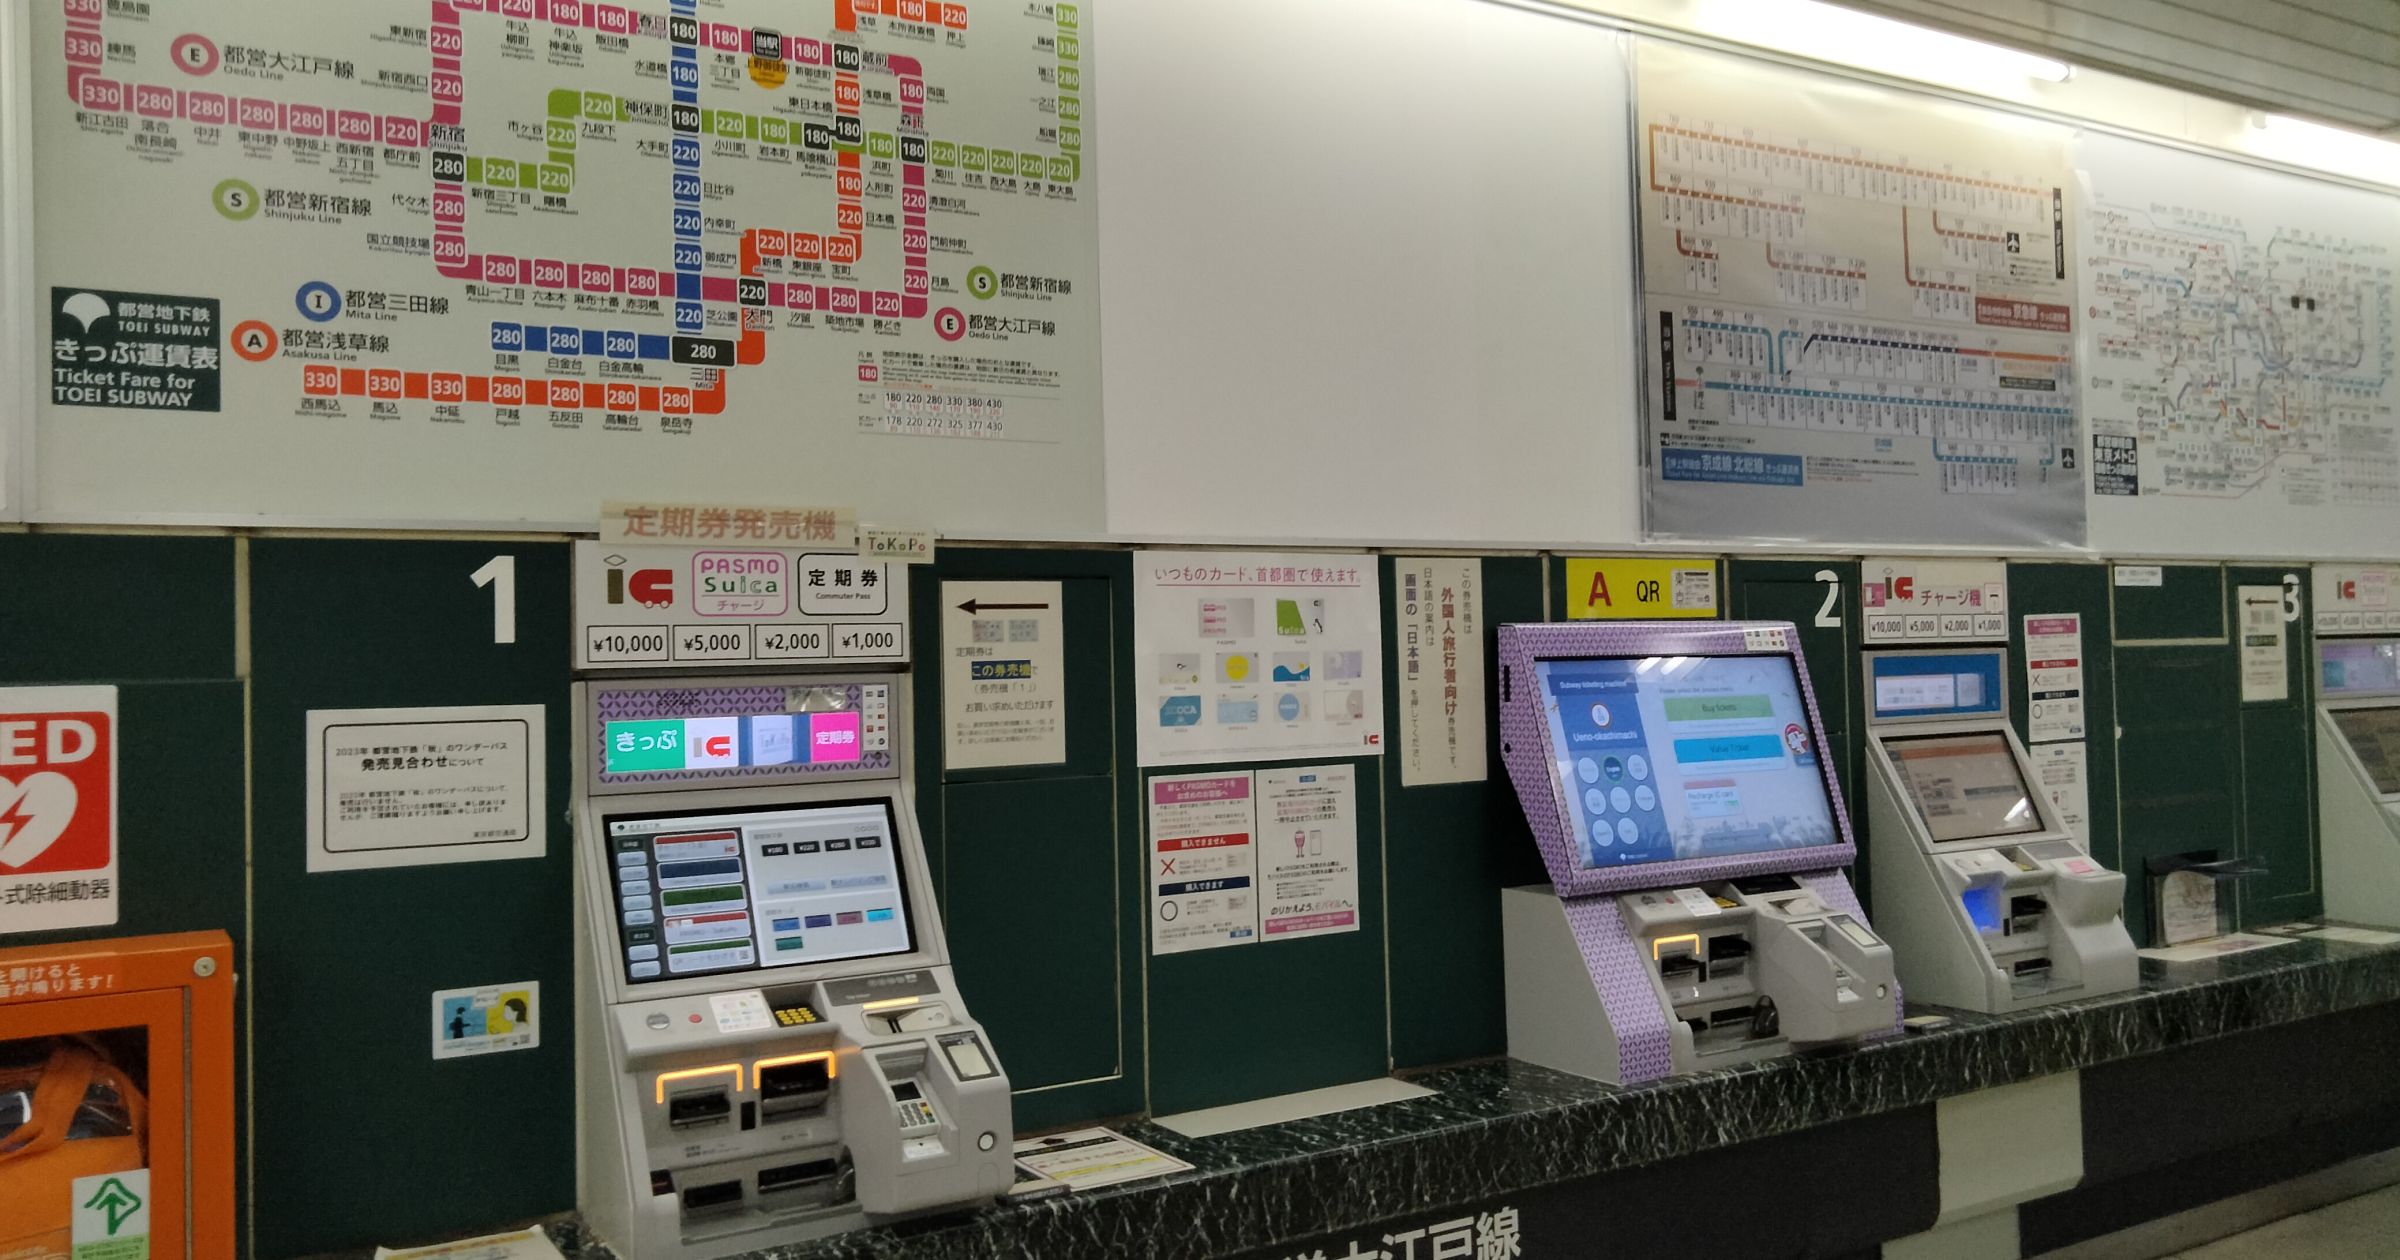 東京都交通局、PASMO定期券の購入をスムーズにできる「TOEIスマート定期券予約」を開始　ToKoPoポイントがあたるキャンペーンも